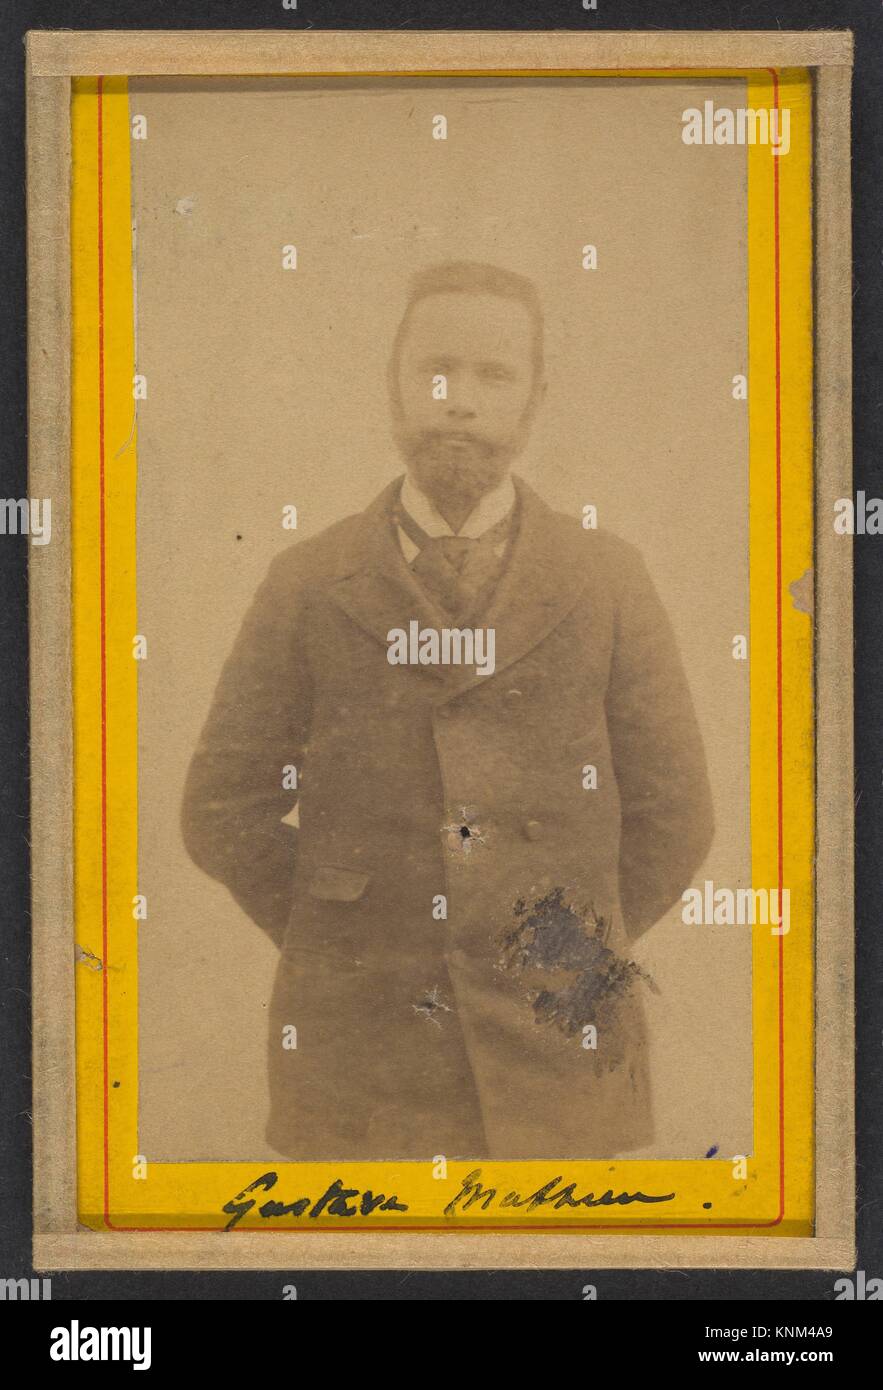 Gustave mathieu Banque de photographies et d'images à haute résolution -  Alamy